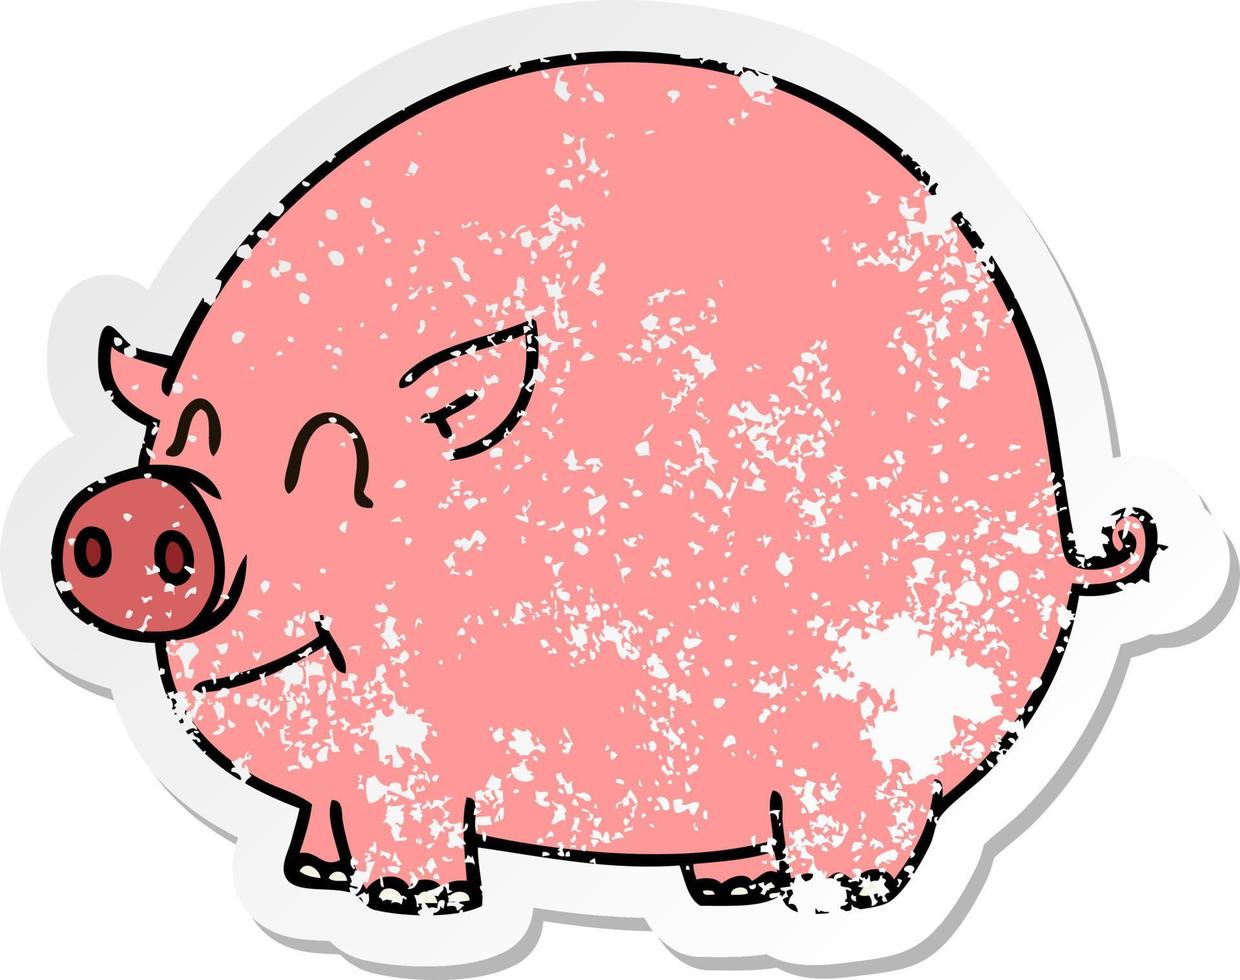 vinheta angustiada de um porco de desenho animado desenhado à mão peculiar vetor